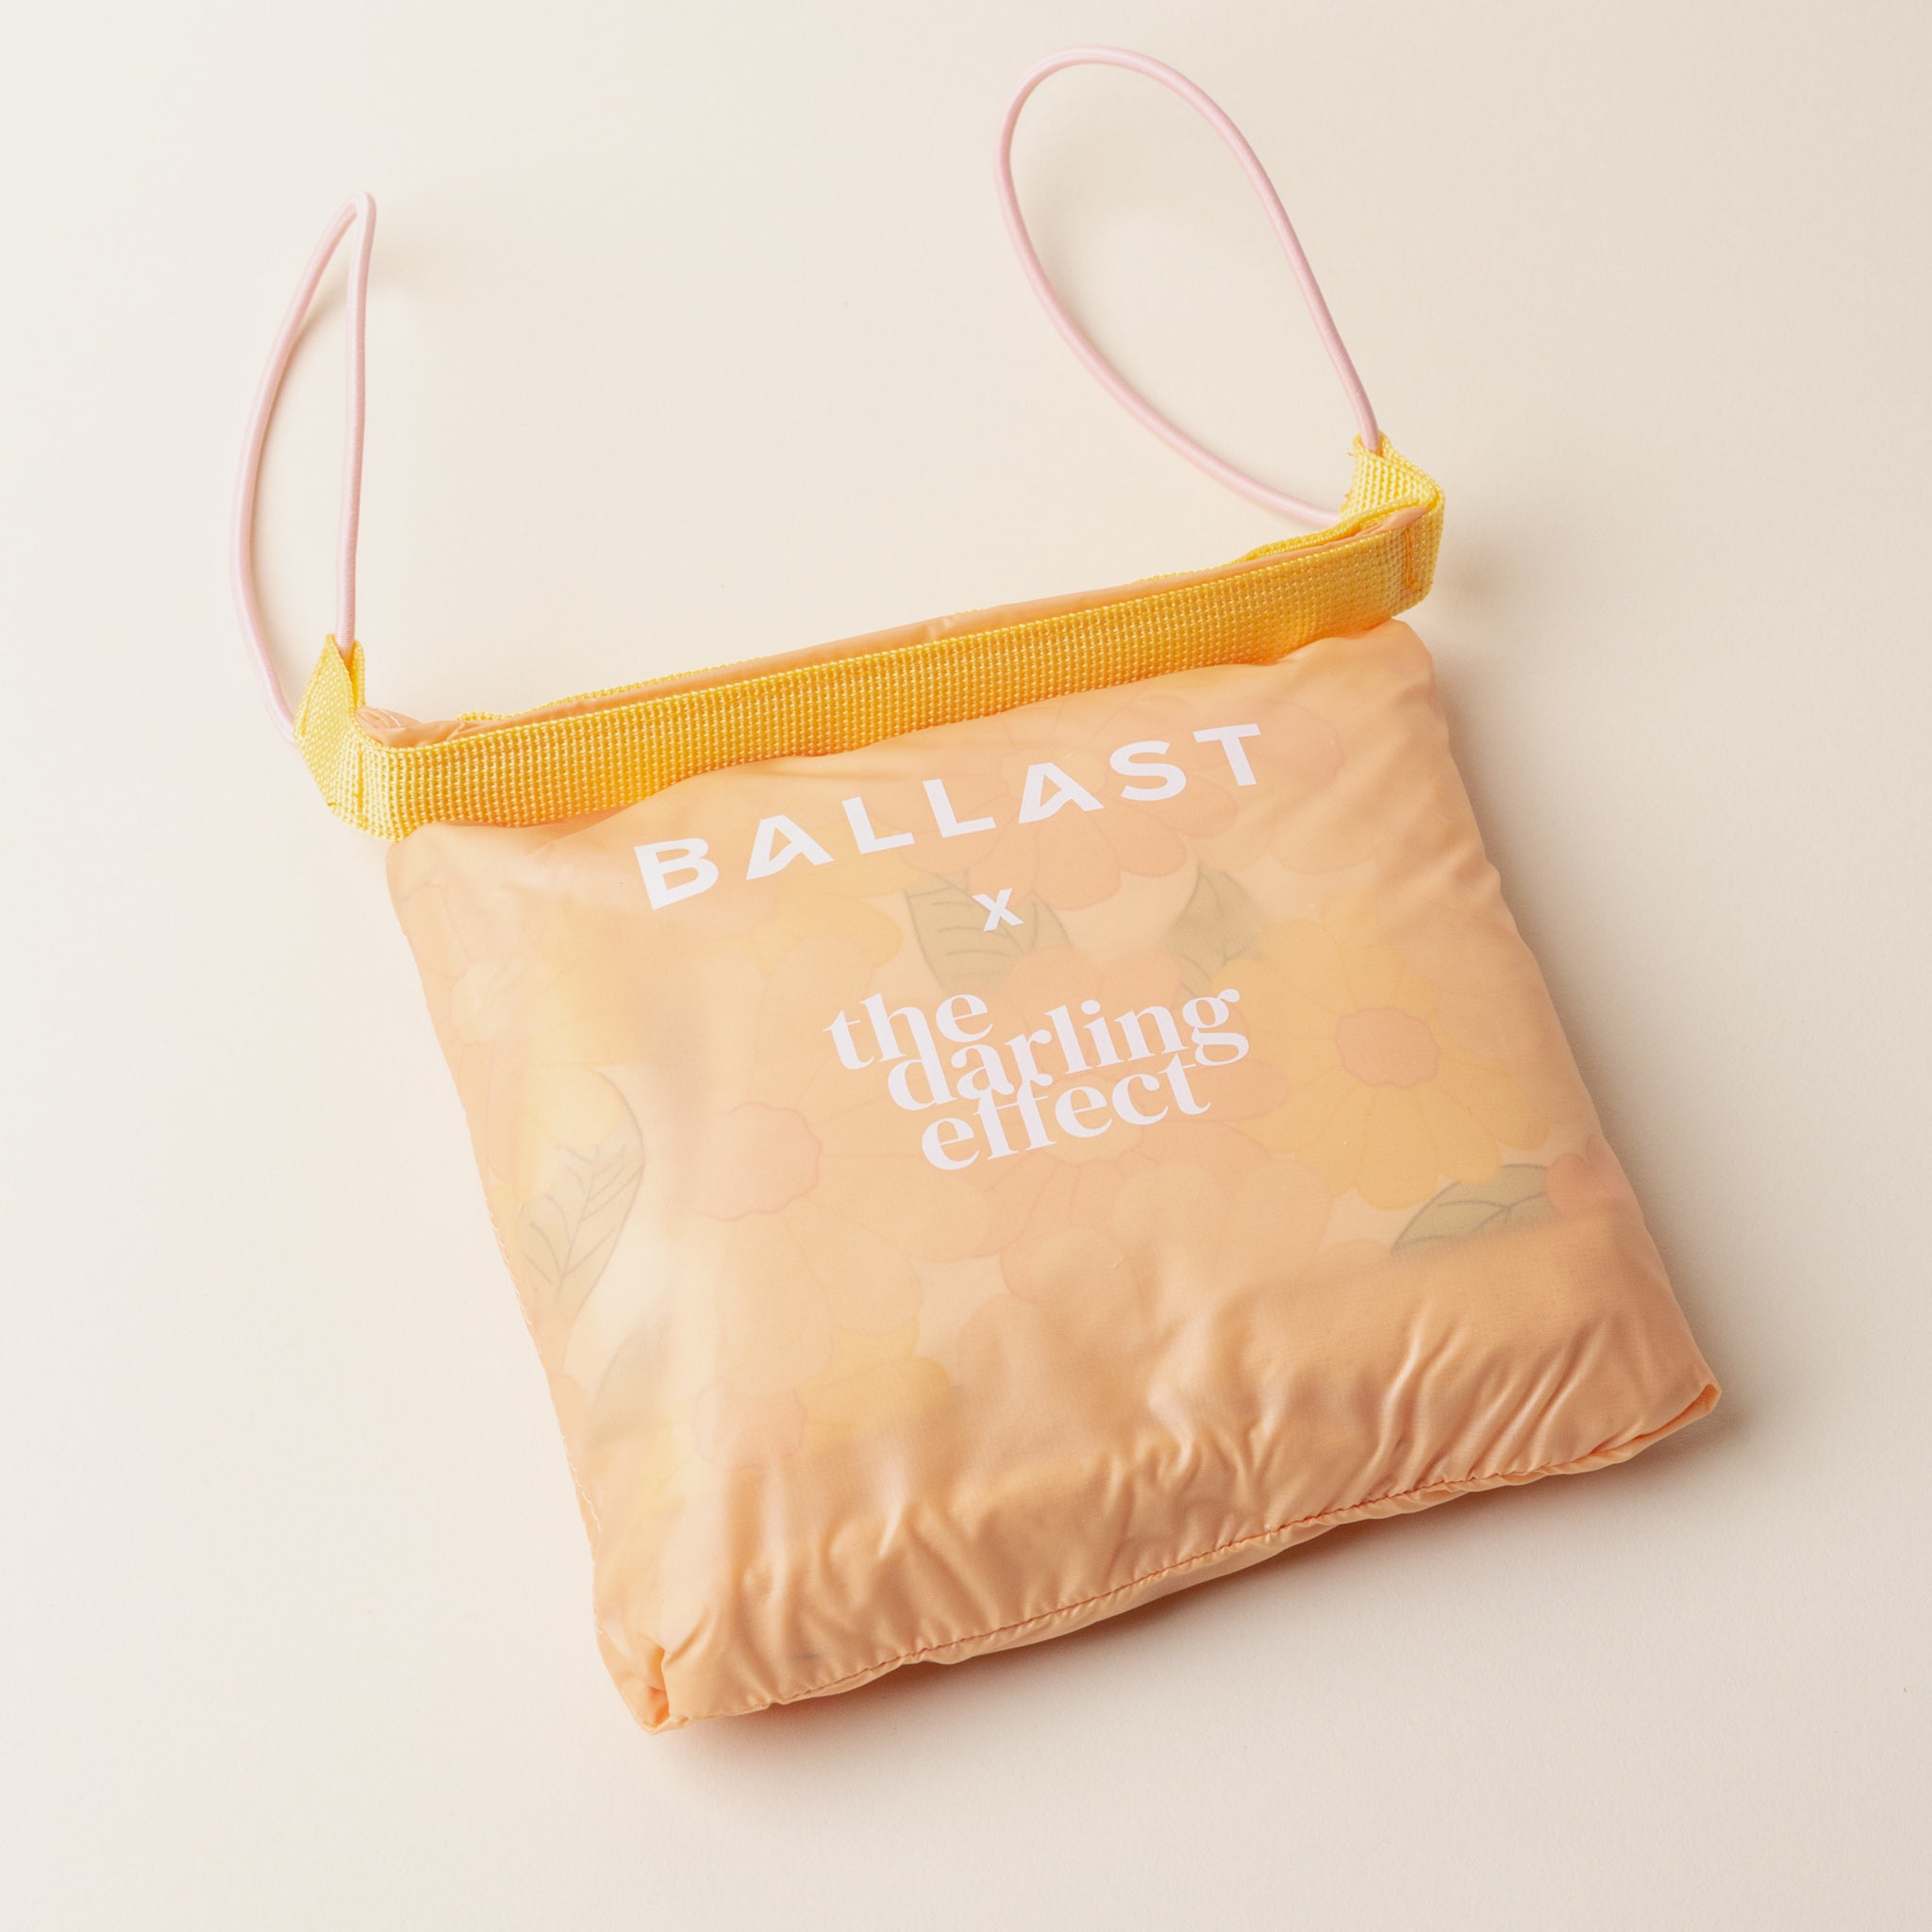 Ballast x Darling Effect Beach Pillow